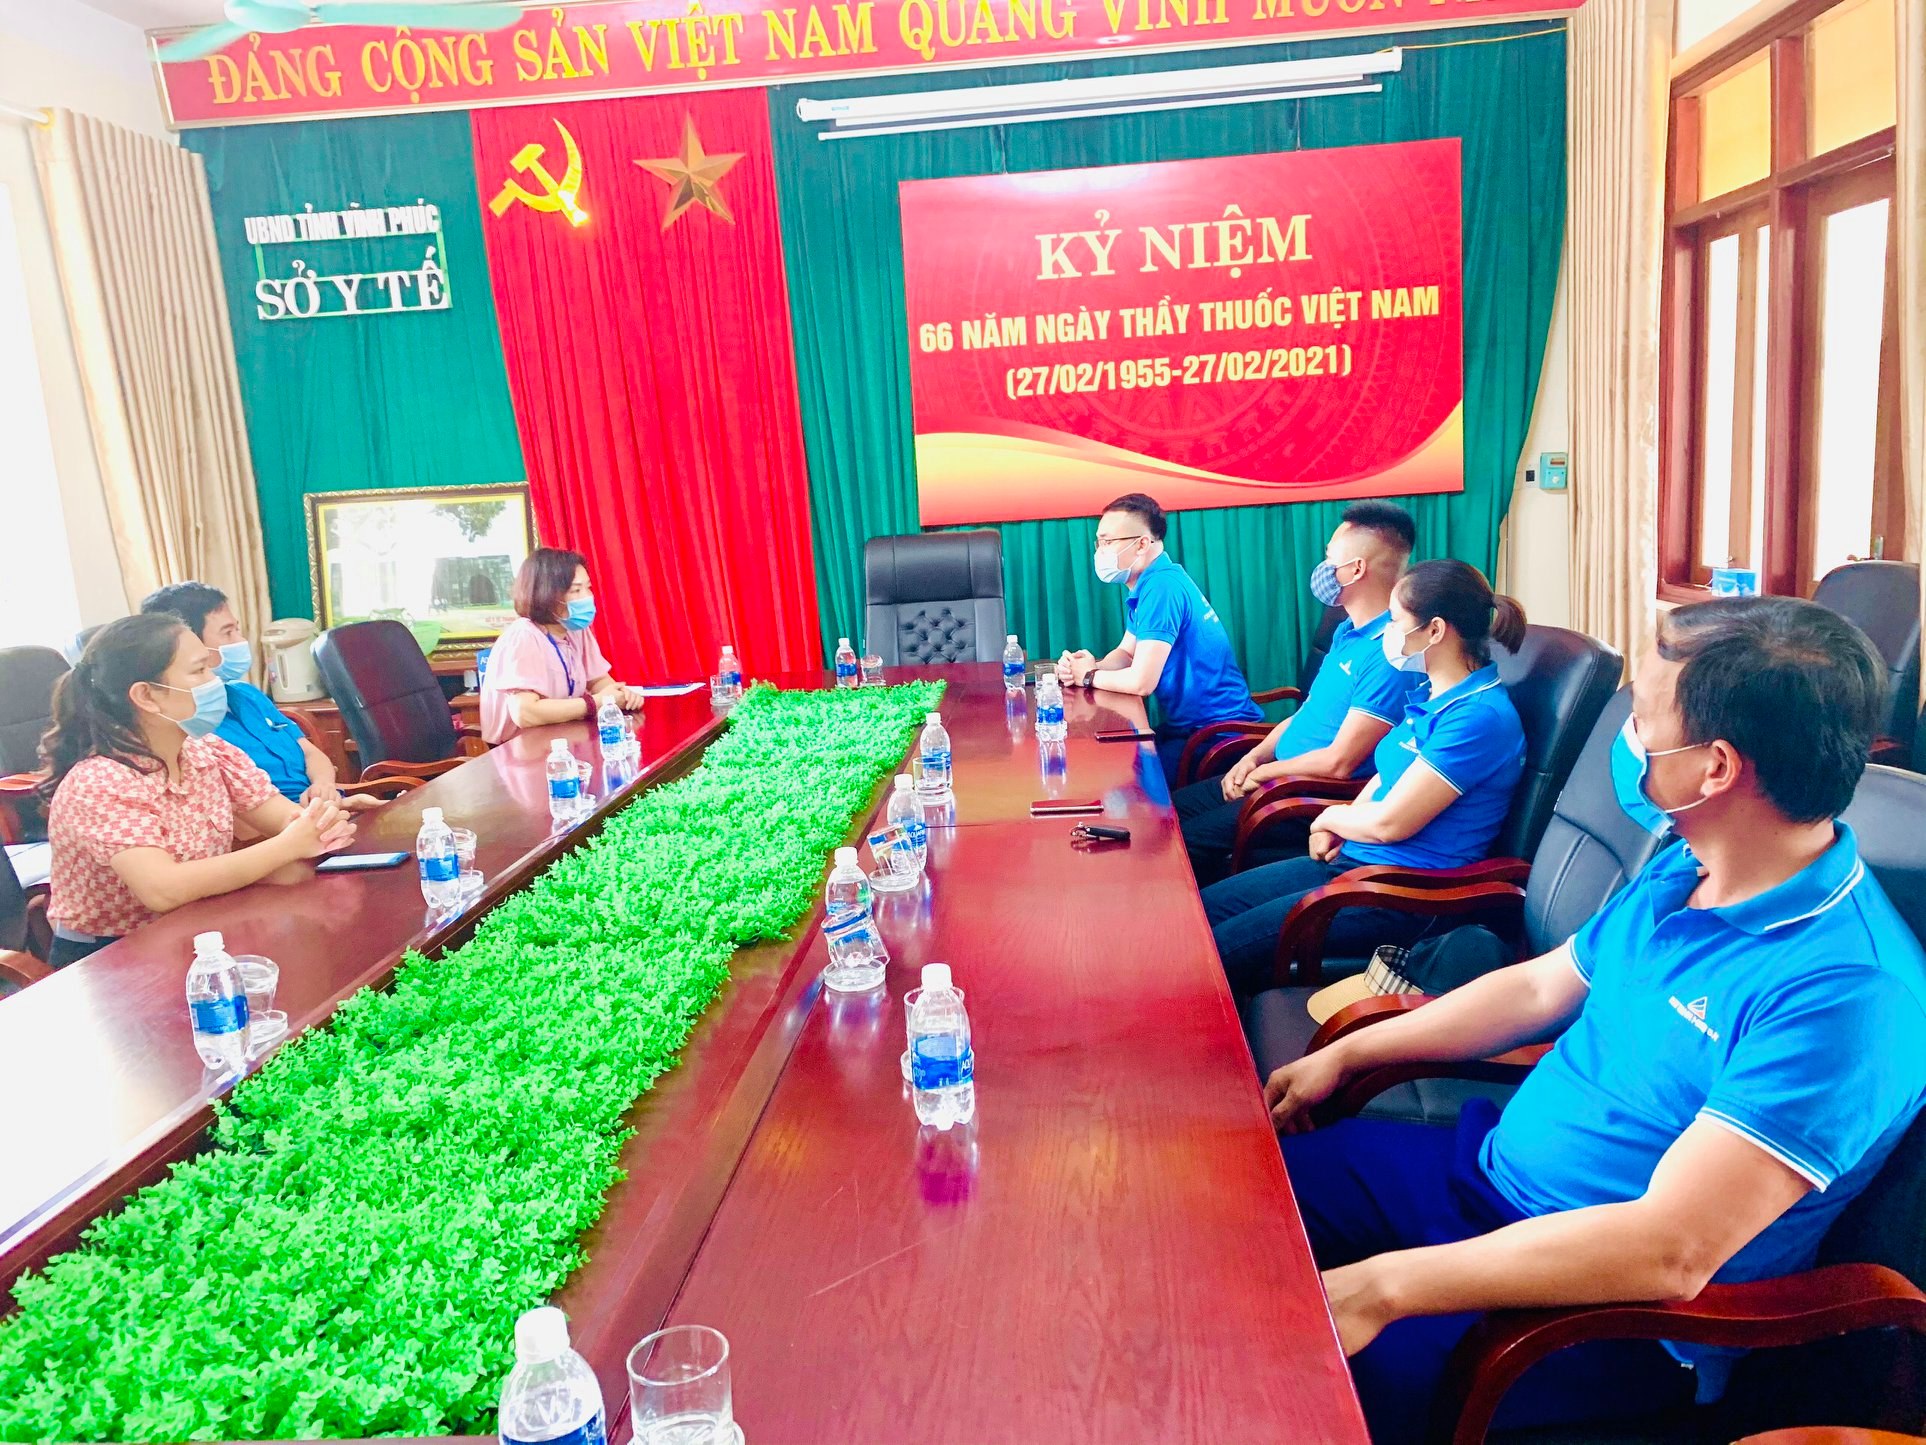 Đất Xanh Duyên Hải hỗ trợ đội ngũ y bác sỹ tại Thái Bình, Vĩnh Phúc và Bắc Ninh